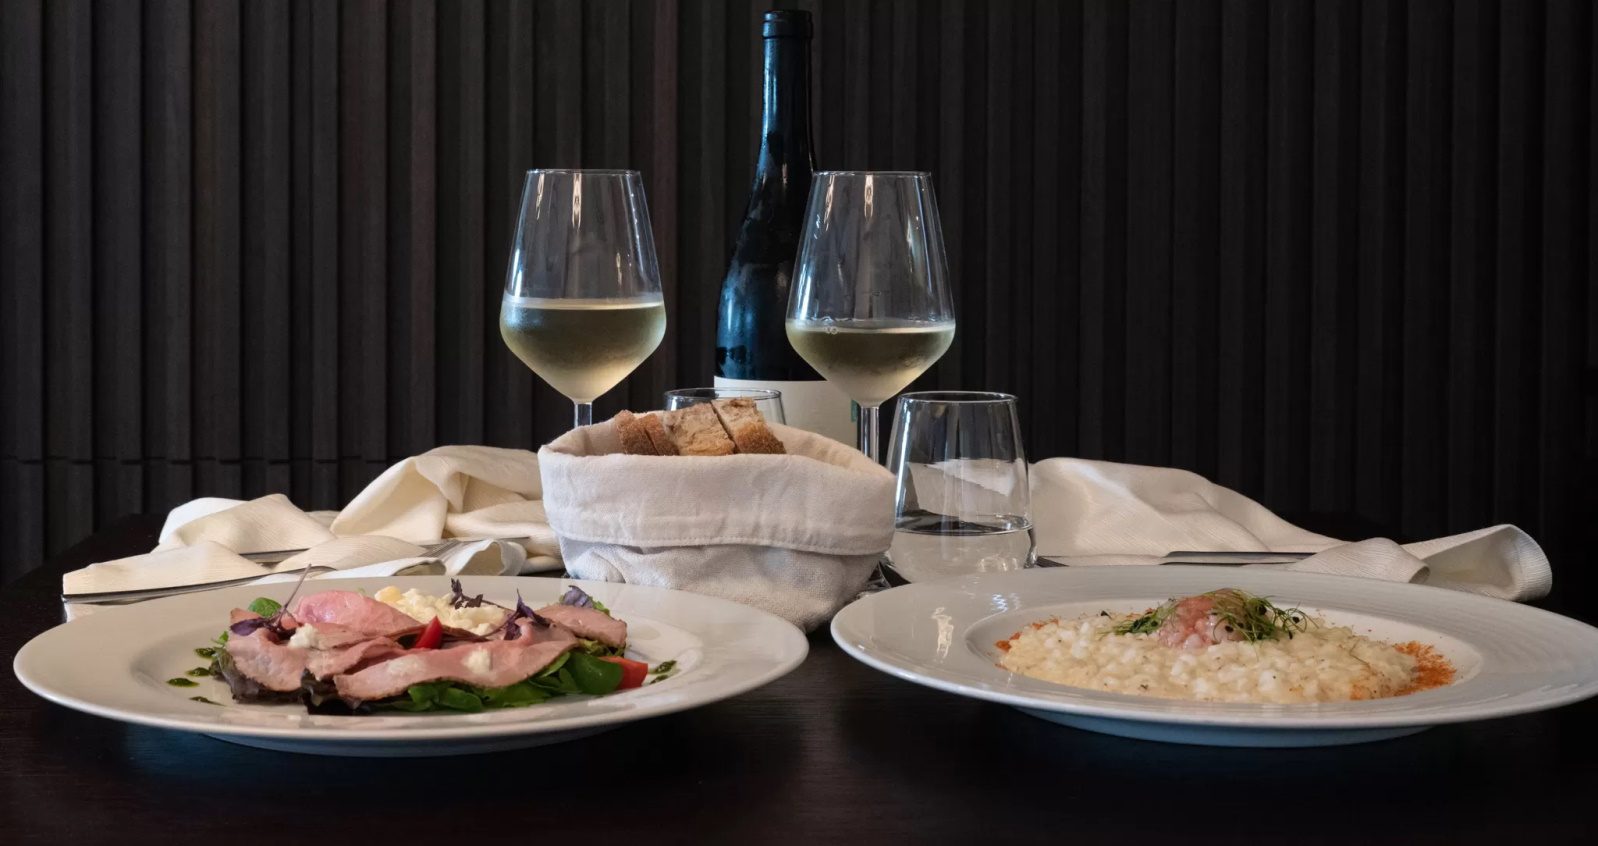 Scopri la bellezza del Cilento al ristorante “I Saraceni”: relax, gourmet e avventure indimenticabili